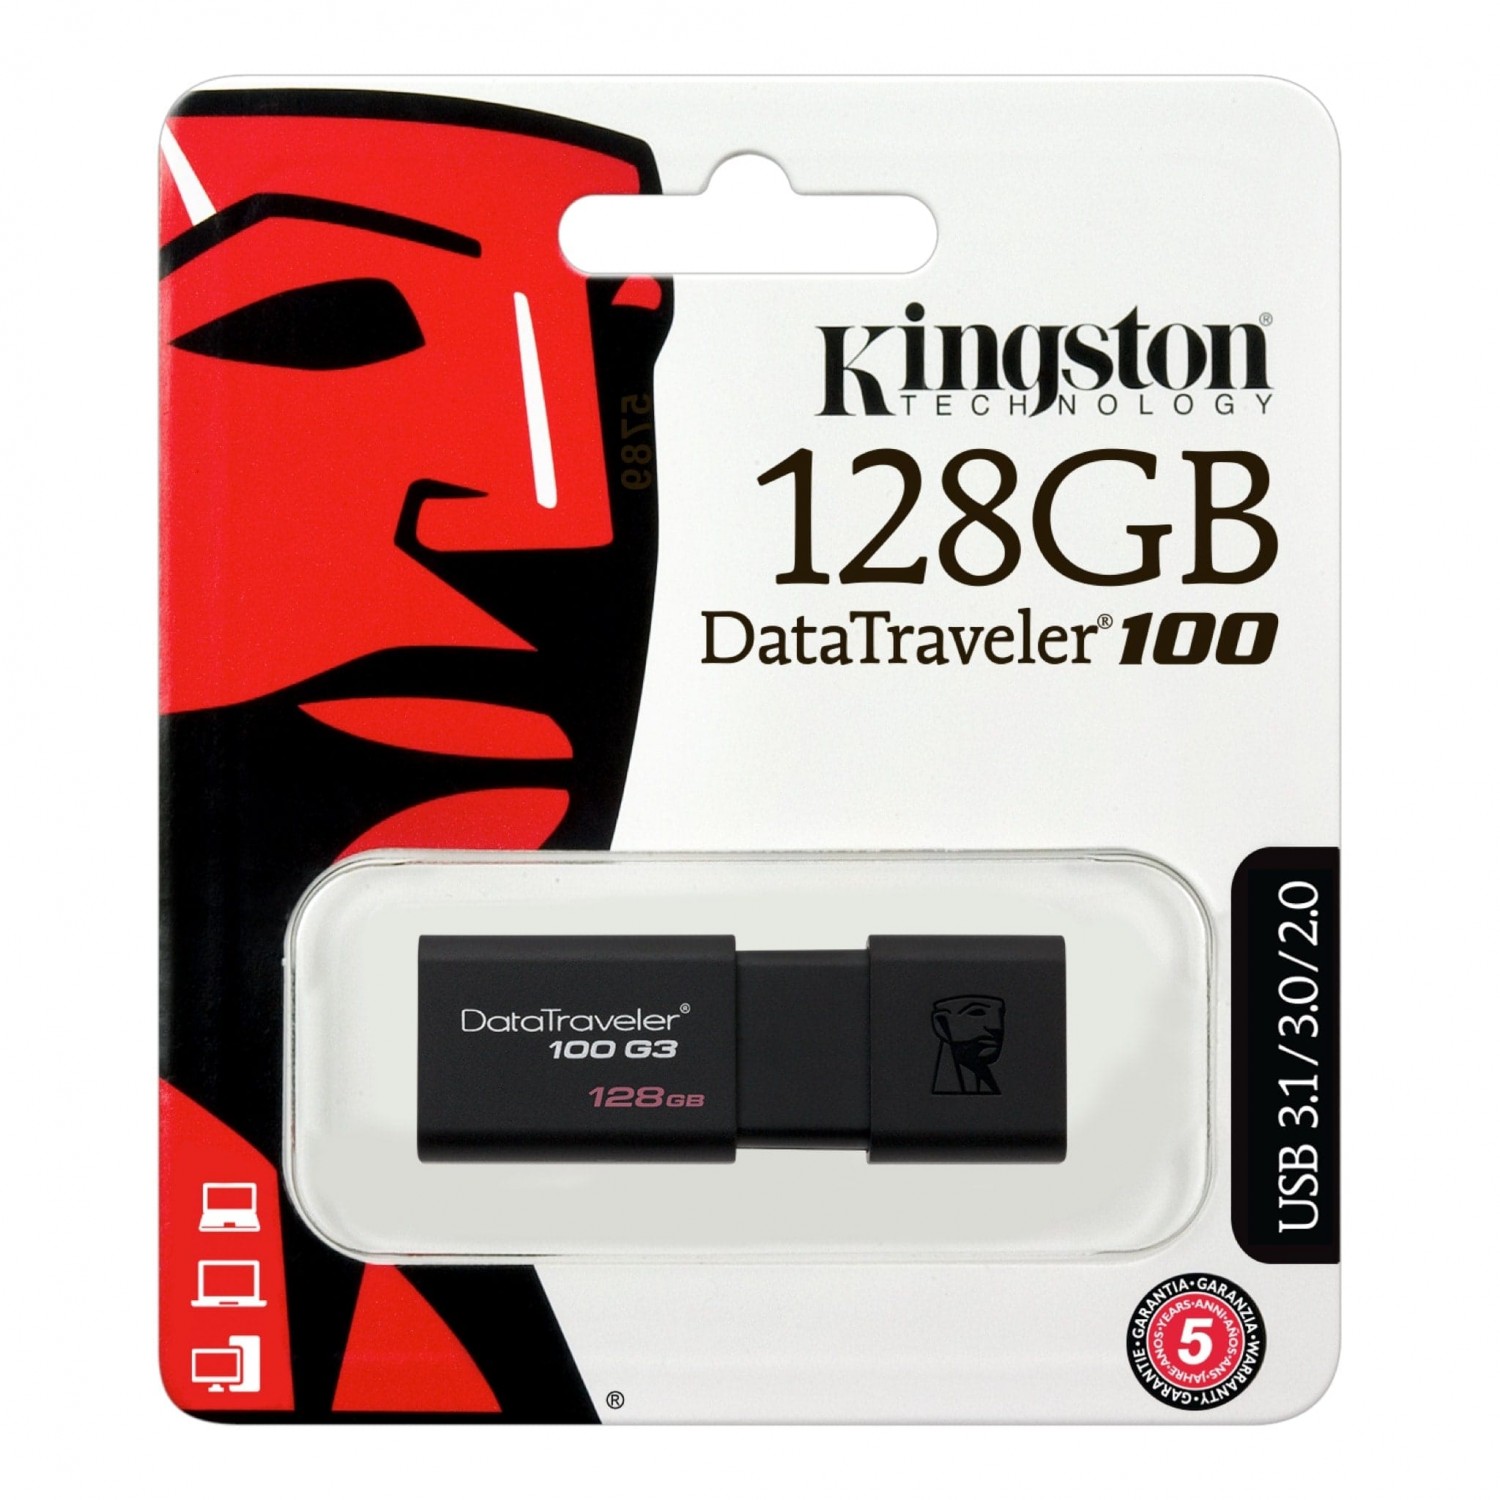 USB, SD Card